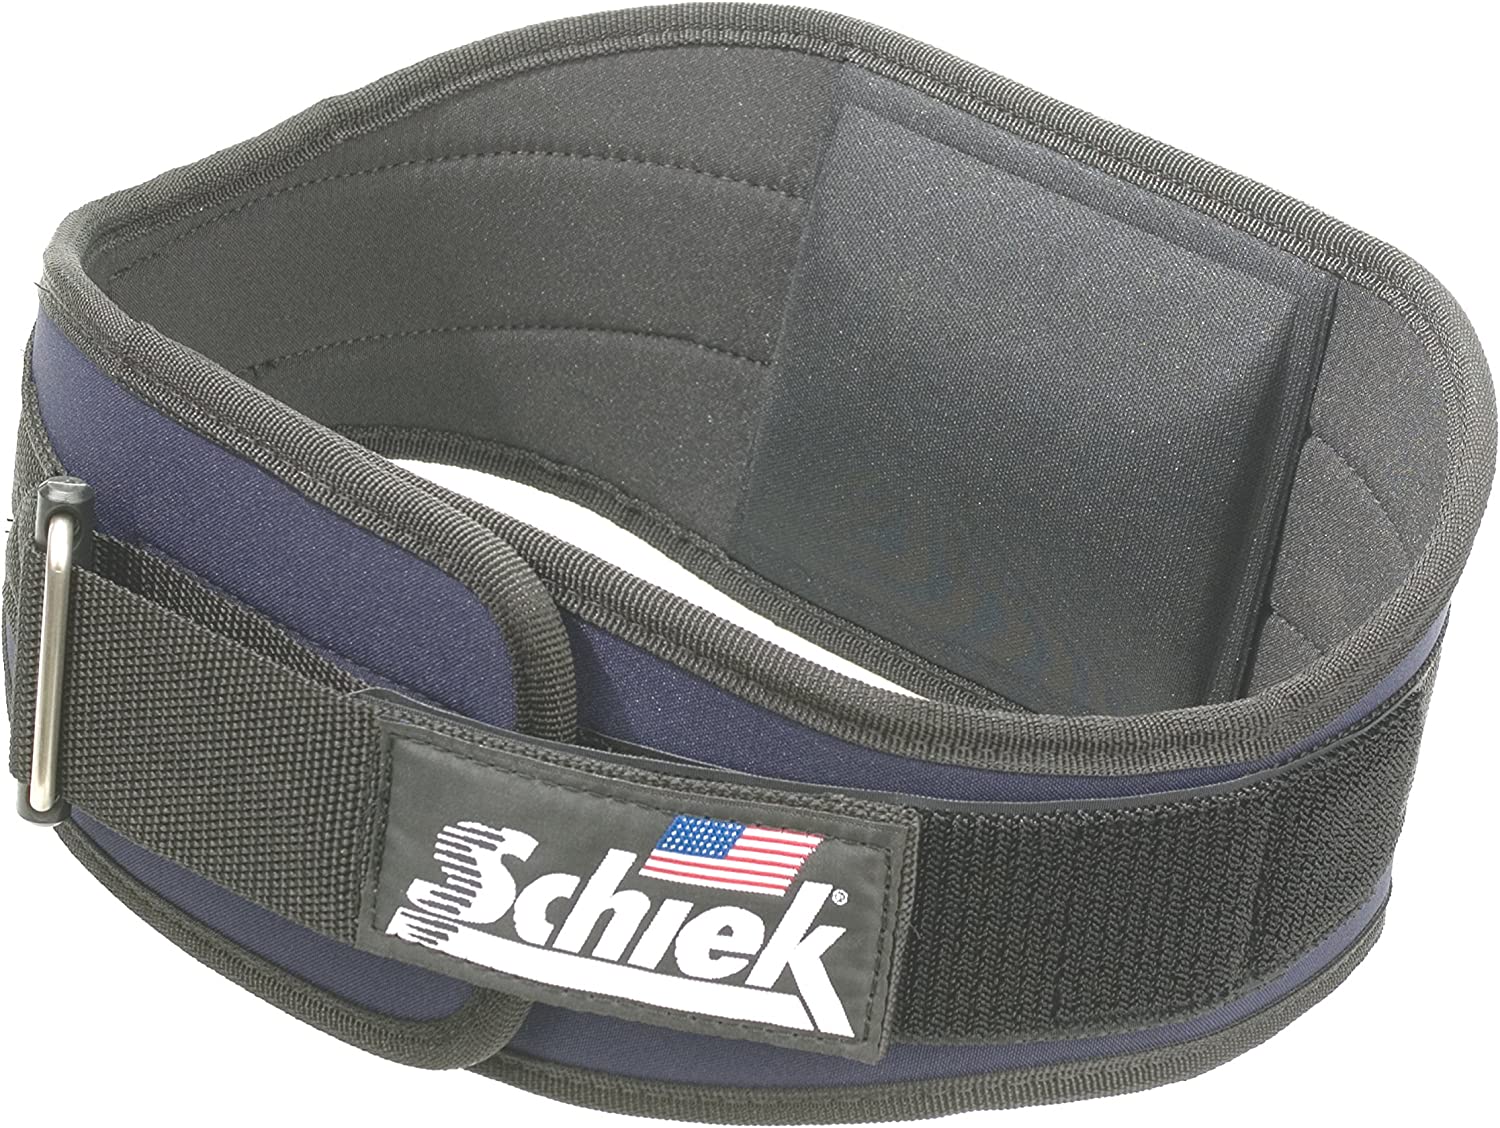 Schiek 4004 Weight Lifting Belt with Lumbar Pad